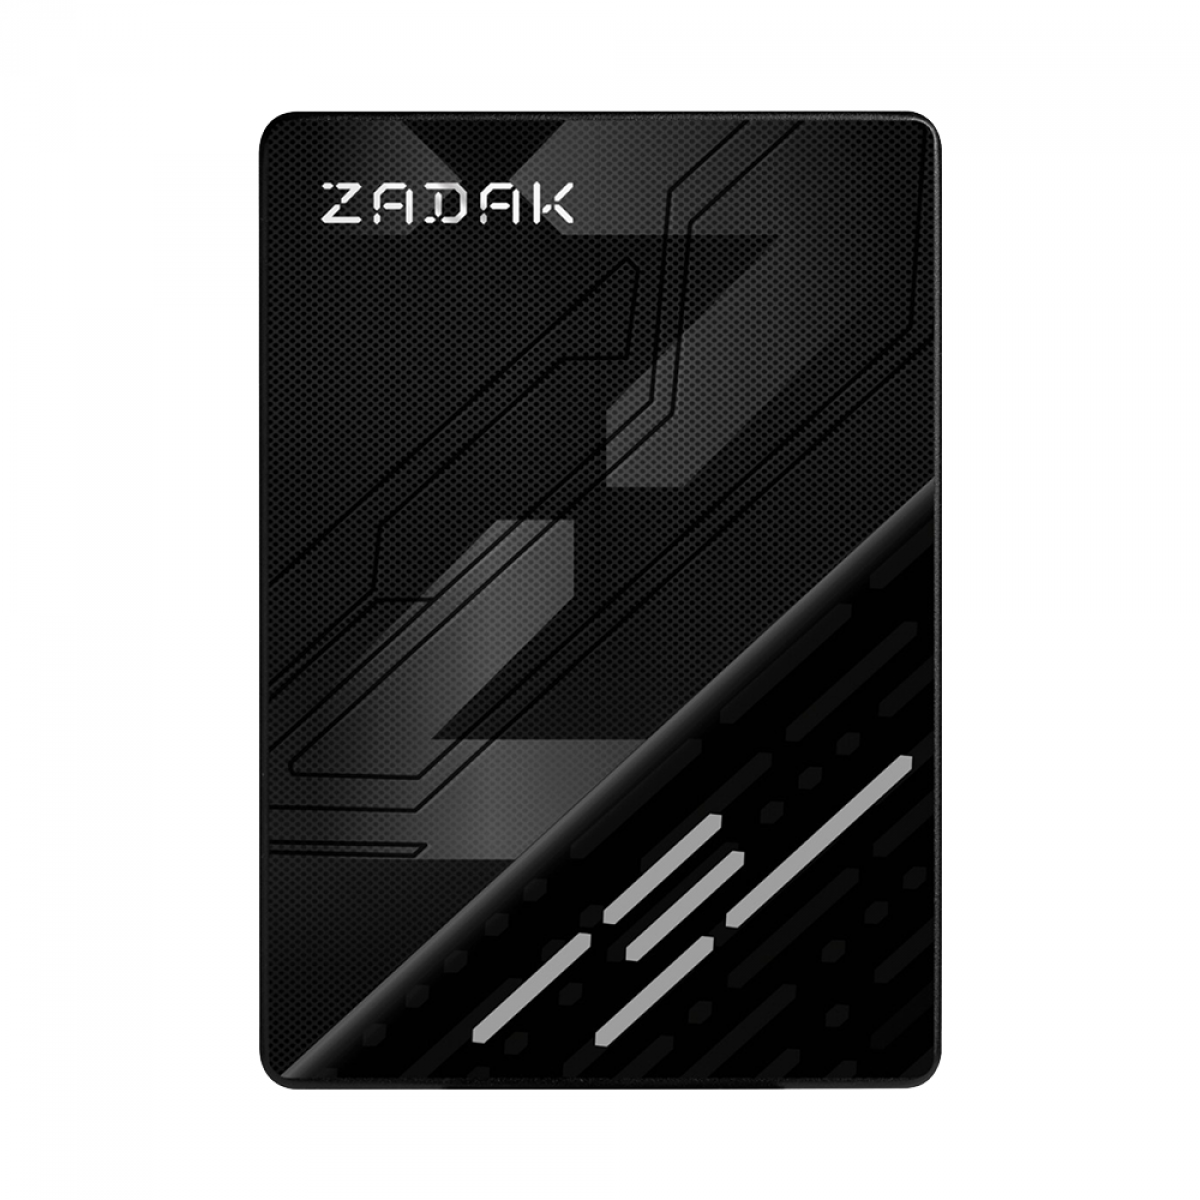 SSD Zadak TWSS3, 1TB, Sata III, Leitura 560MB/s e Gravação 540MB/s, ZS1TBTWSS3-1